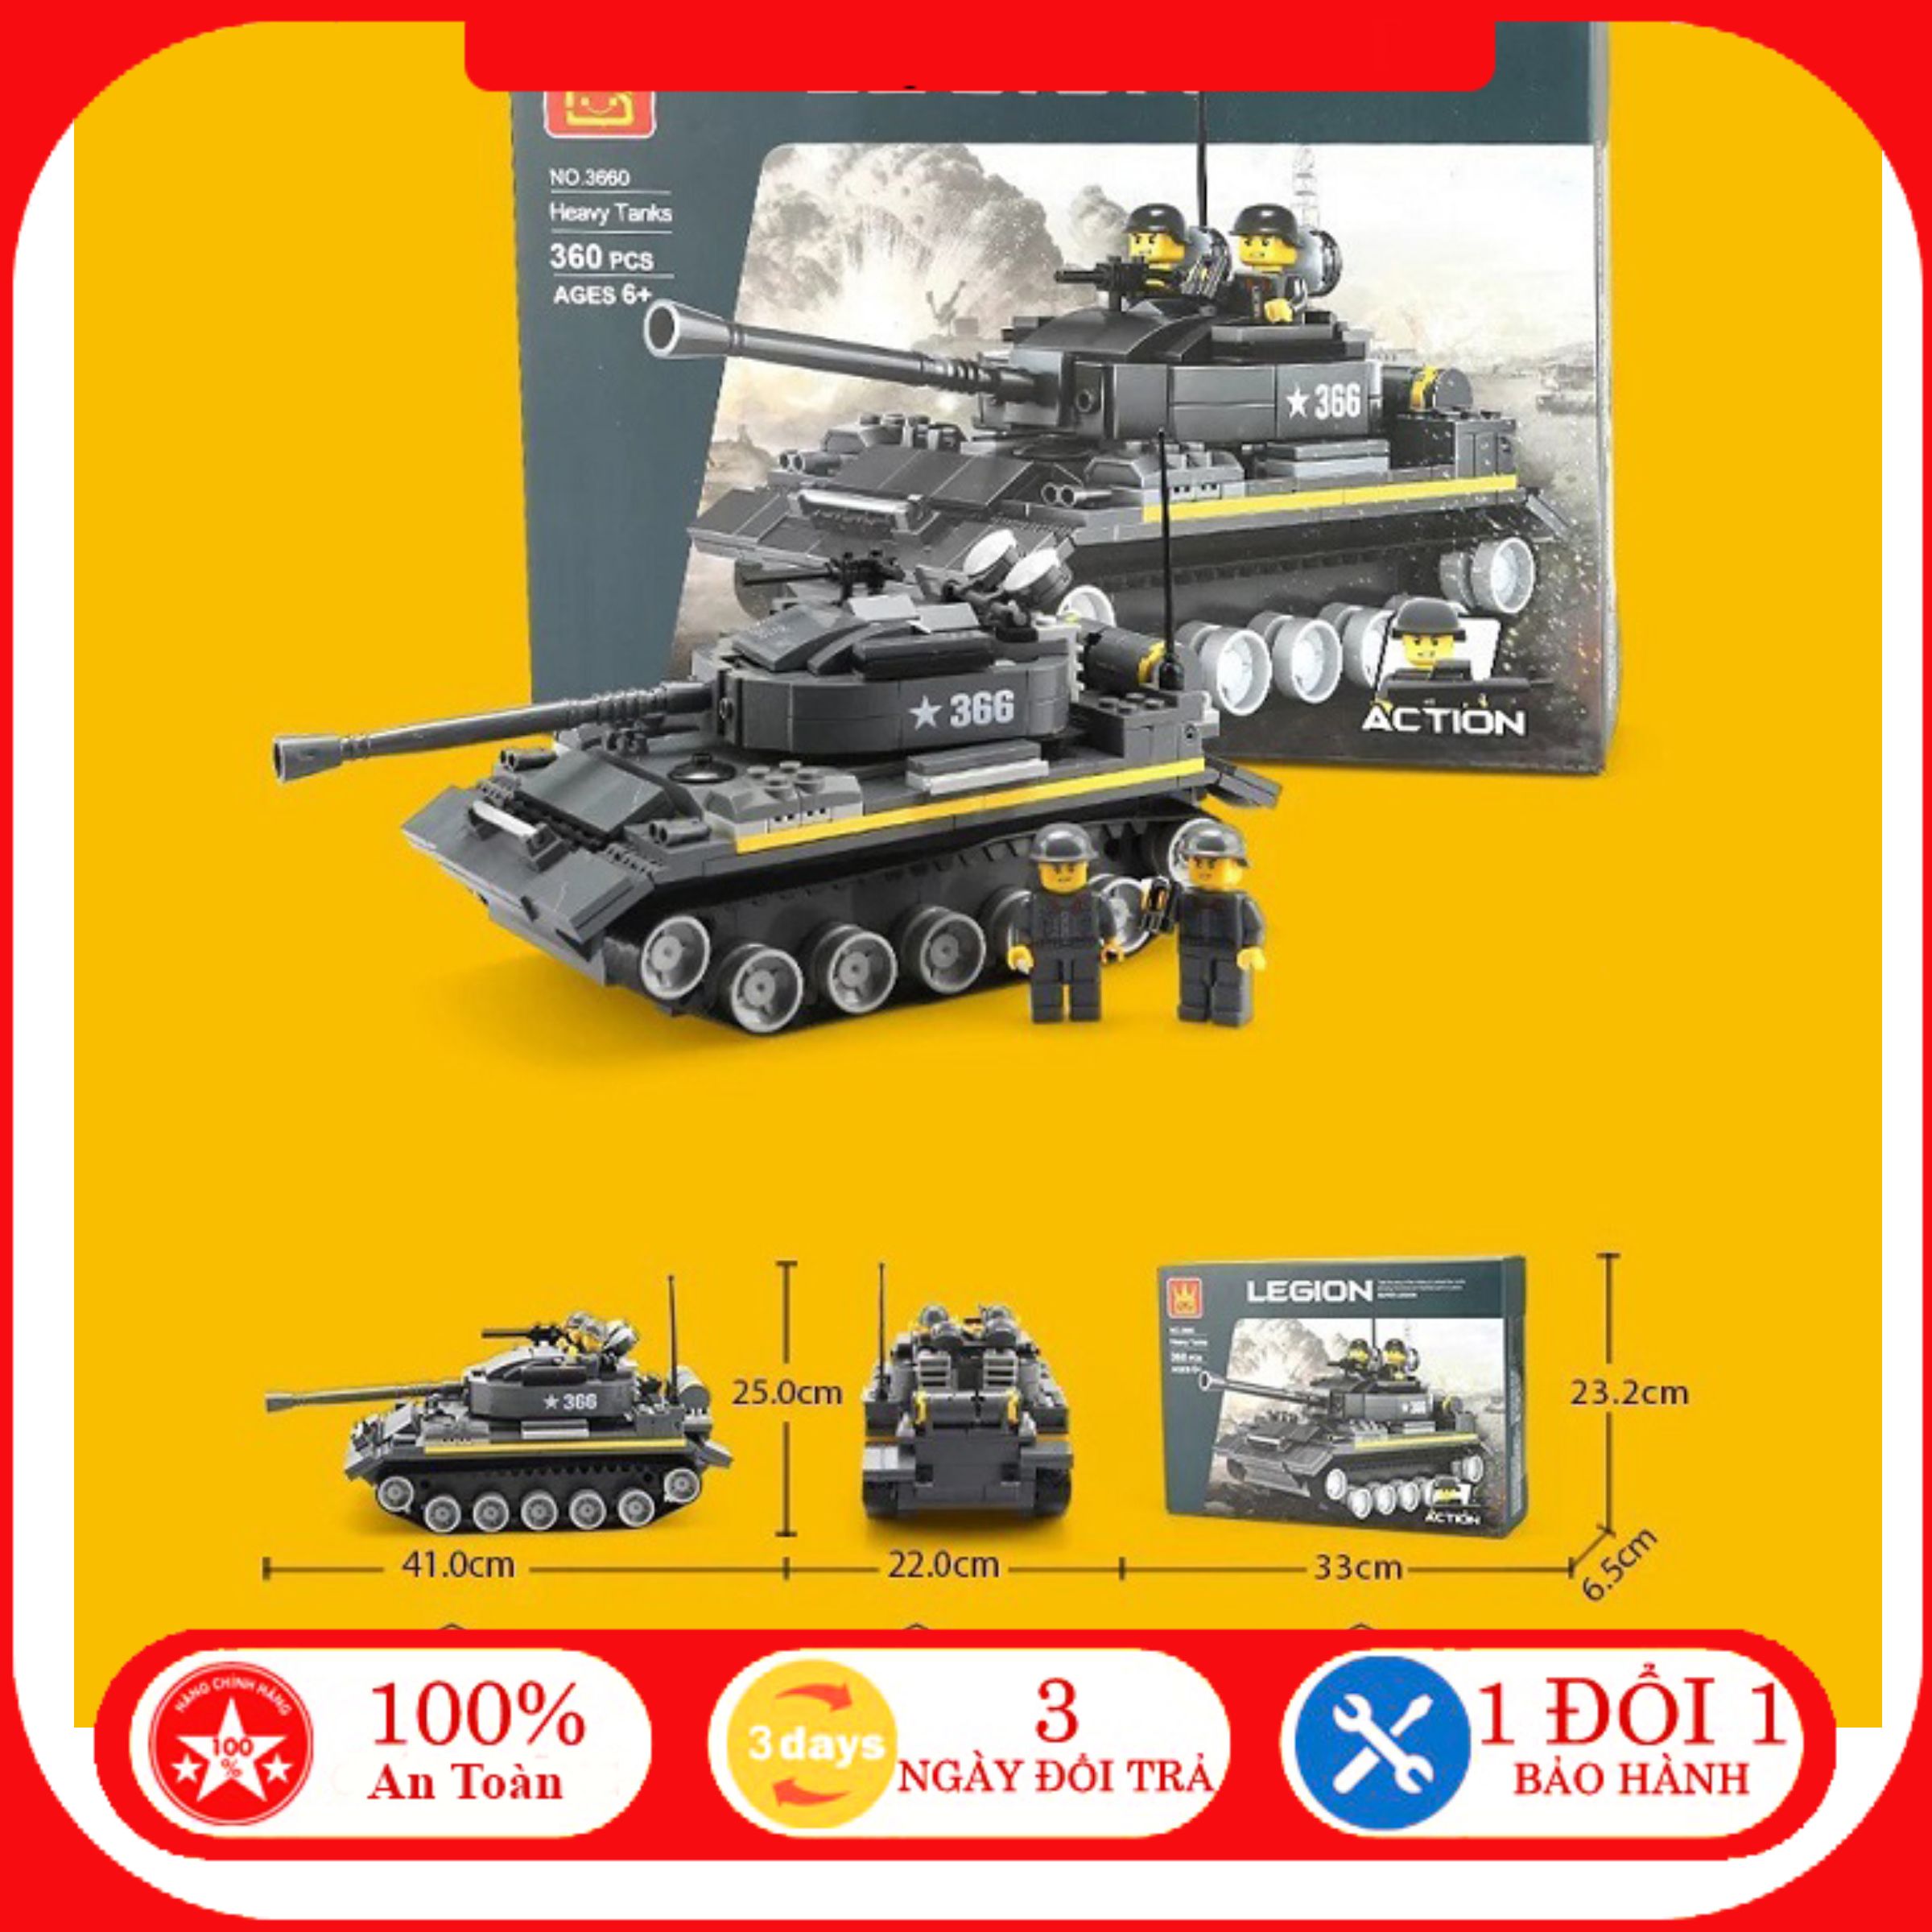 Lego XE Tăng Quân đội Rẻ giá tốt là sản phẩm không thể bỏ lỡ cho những ai yêu thích đồ chơi xếp hình. Với mức giá phải chăng và chất lượng đảm bảo, bạn có thể tận hưởng niềm vui sáng tạo với chiếc xe tăng quân đội được lắp ráp từ những viên đá Lego chất lượng cao.